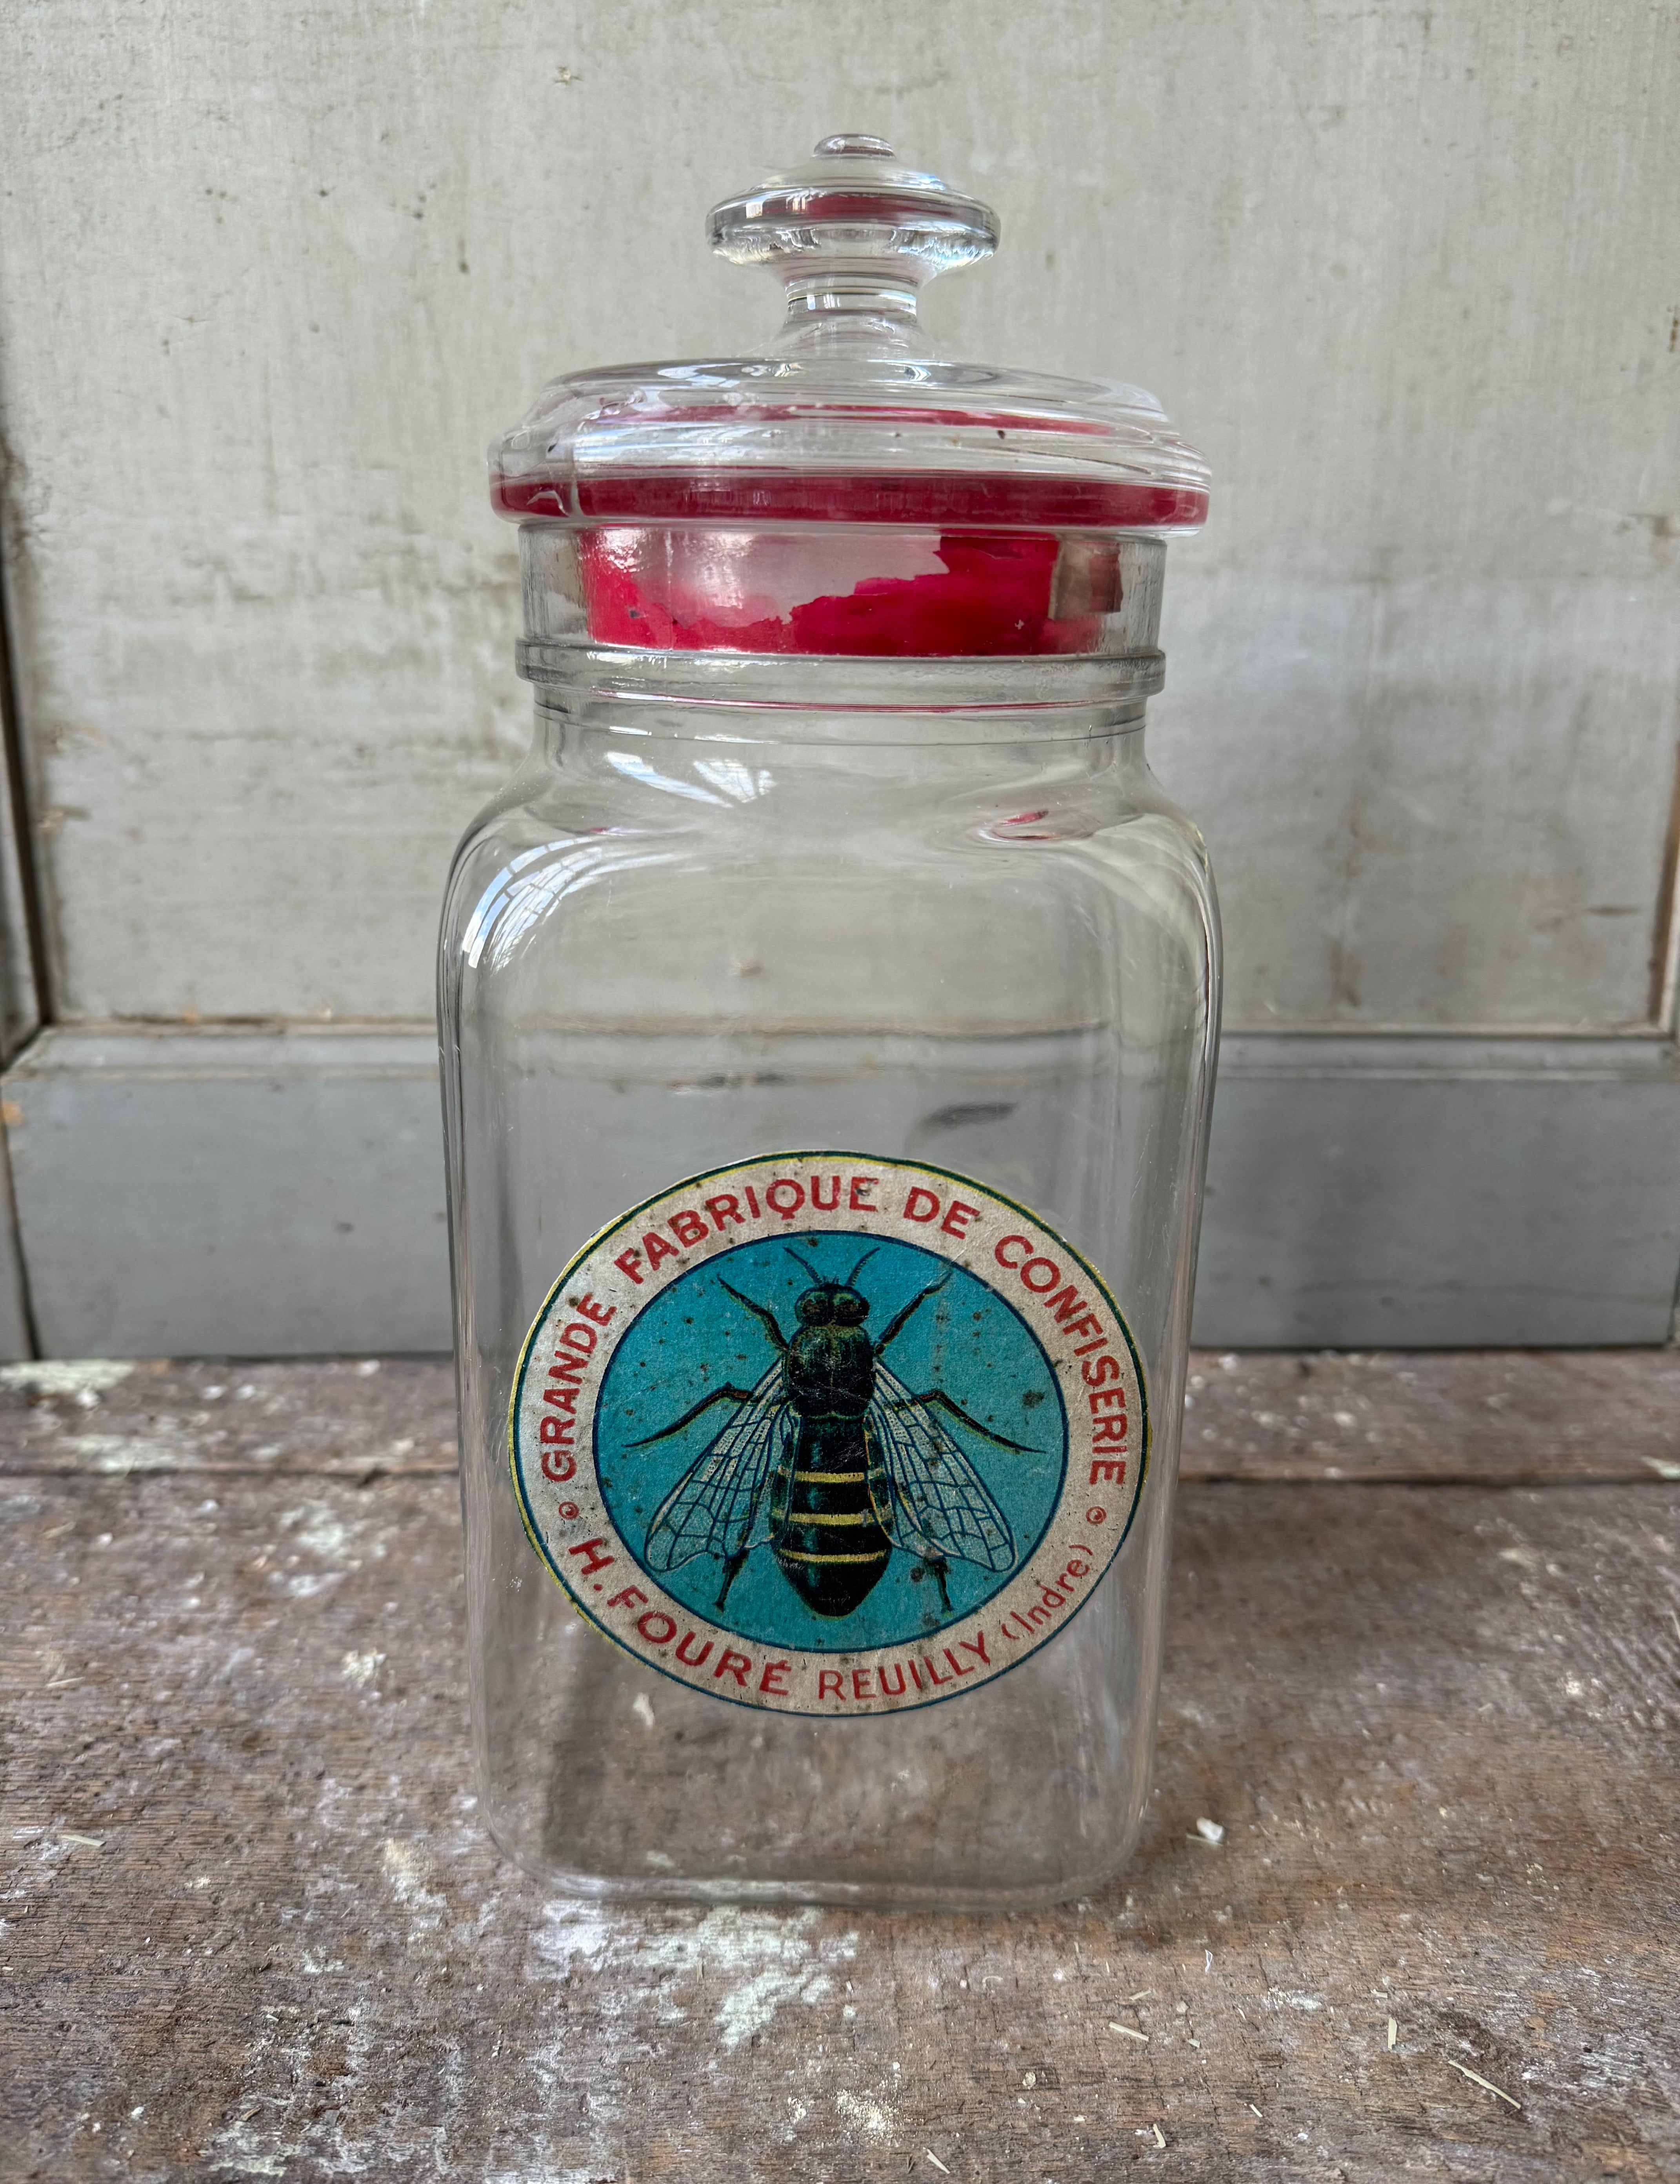 Glass Jar with Vintage Label